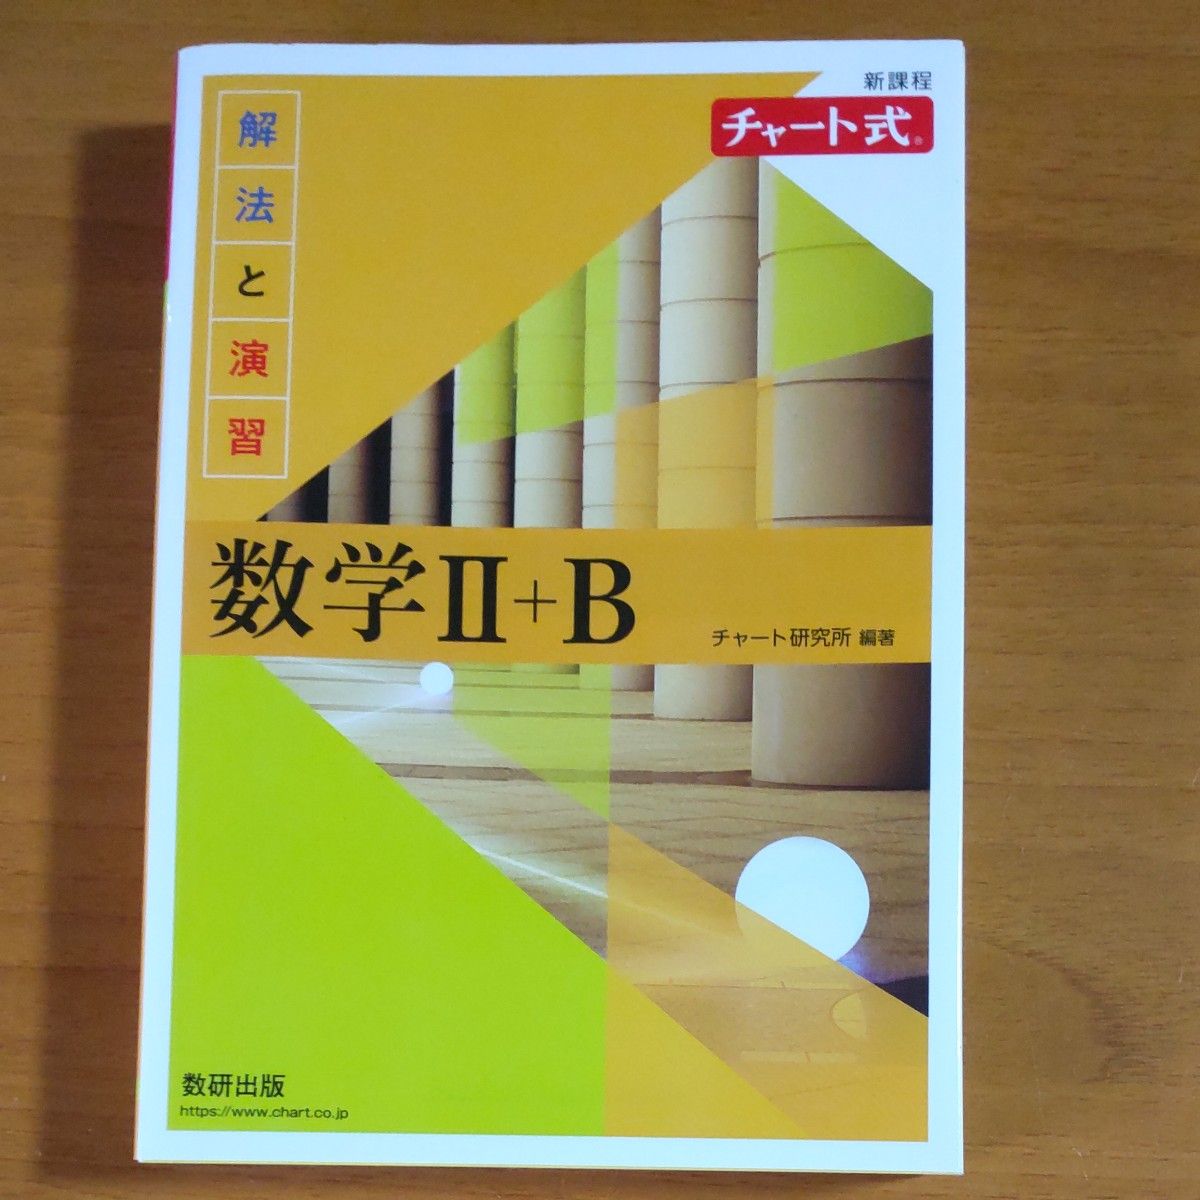 チャート式 数学Ⅱ+B 数研出版